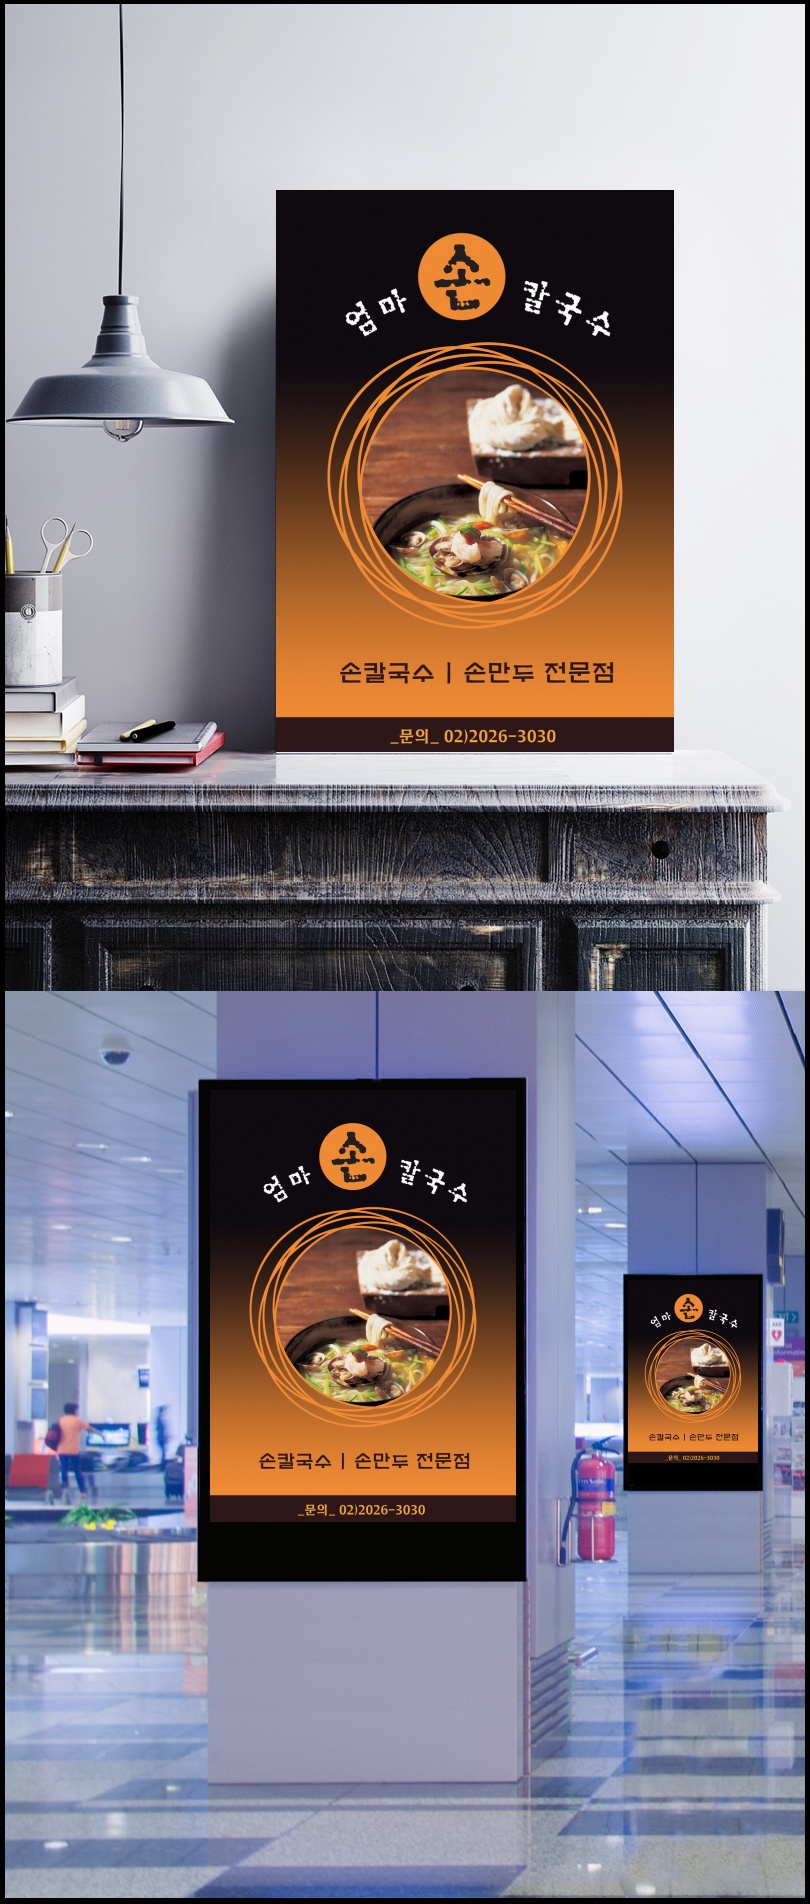 韩式三鲜面海报psd分层素材图片设计模板素材